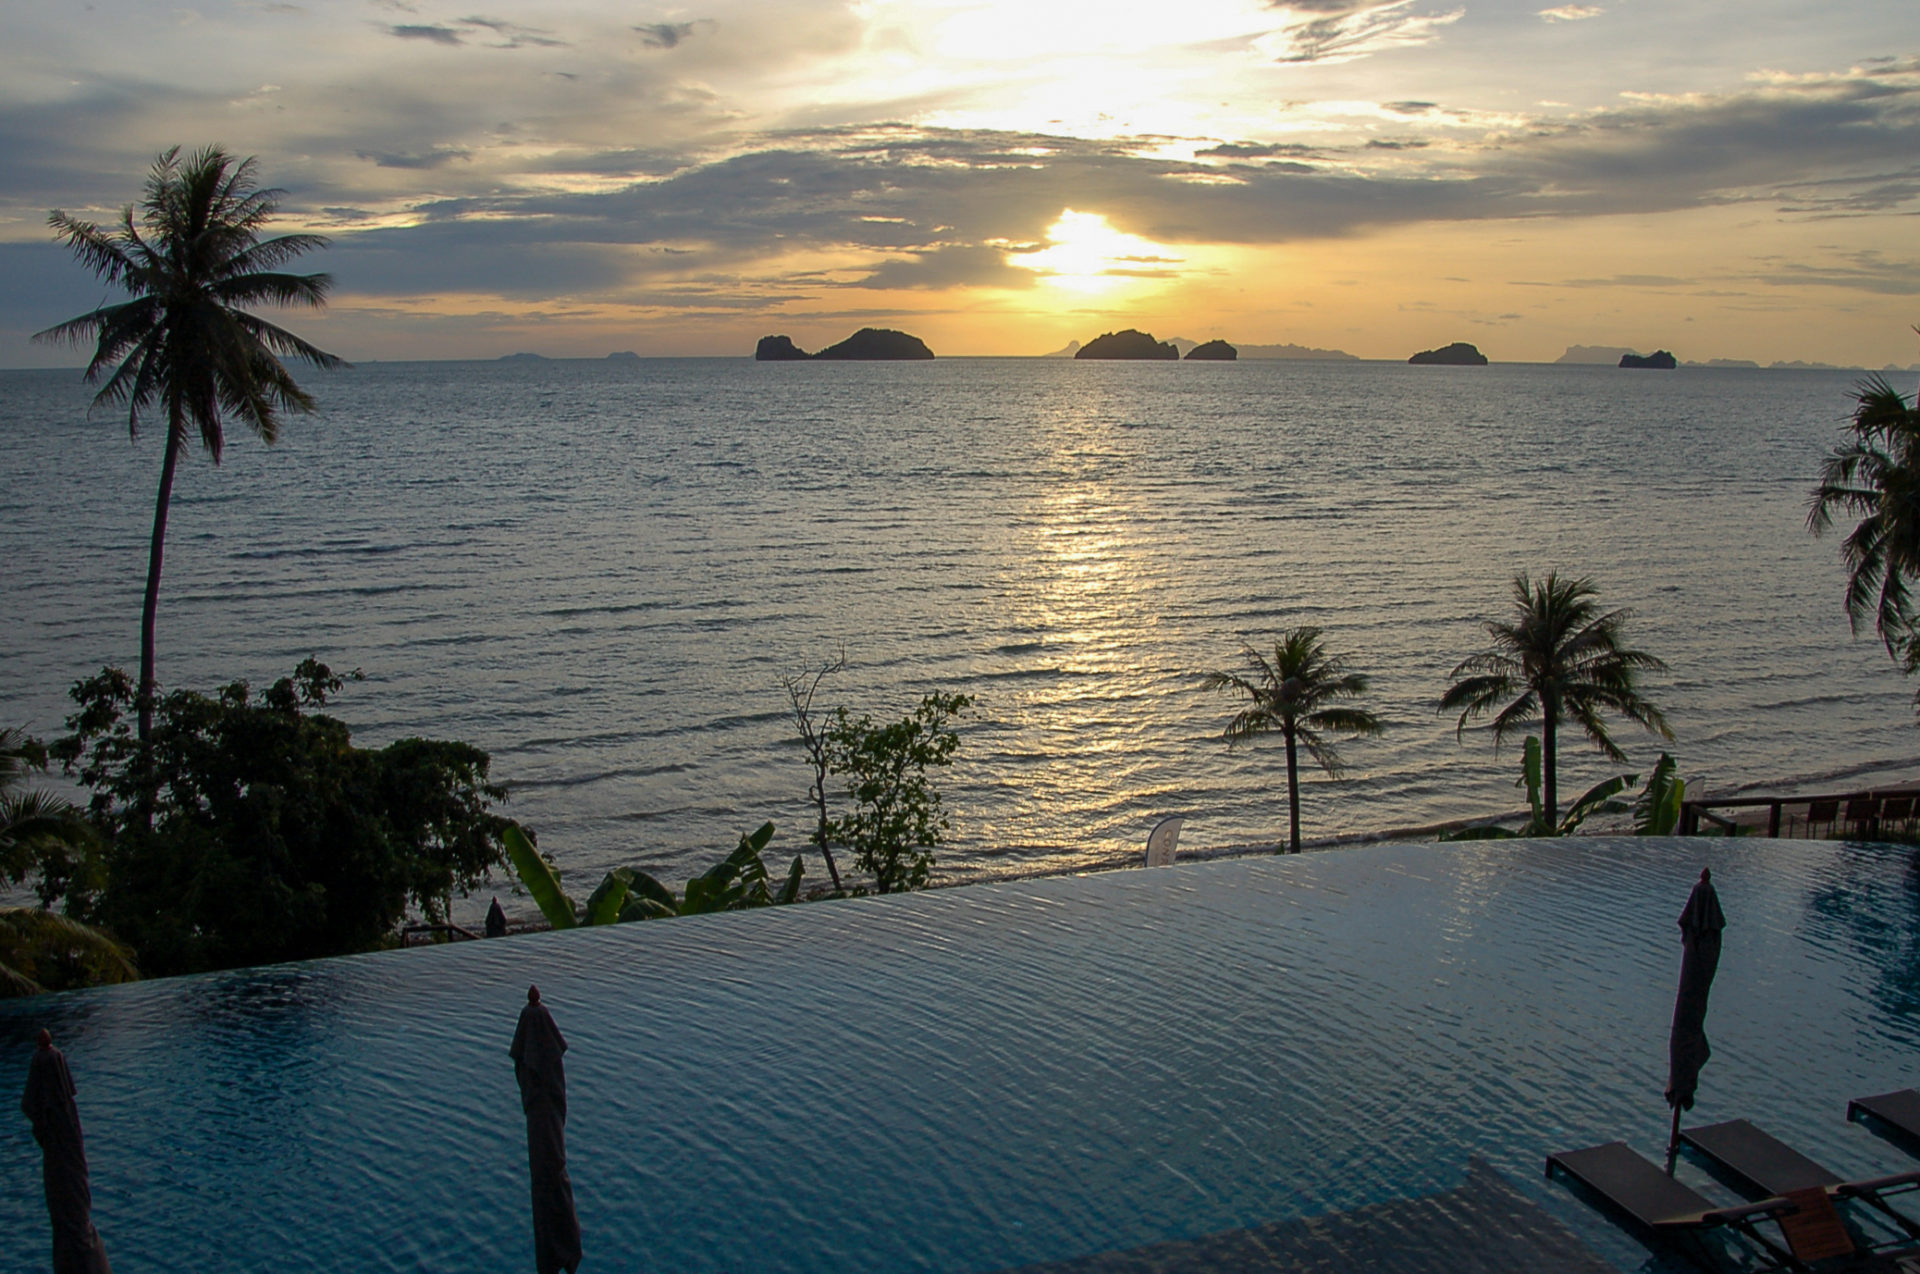 Sonnenuntergang über dem Infinity Pool in Thailand mit Bergen, Meer und Palmen